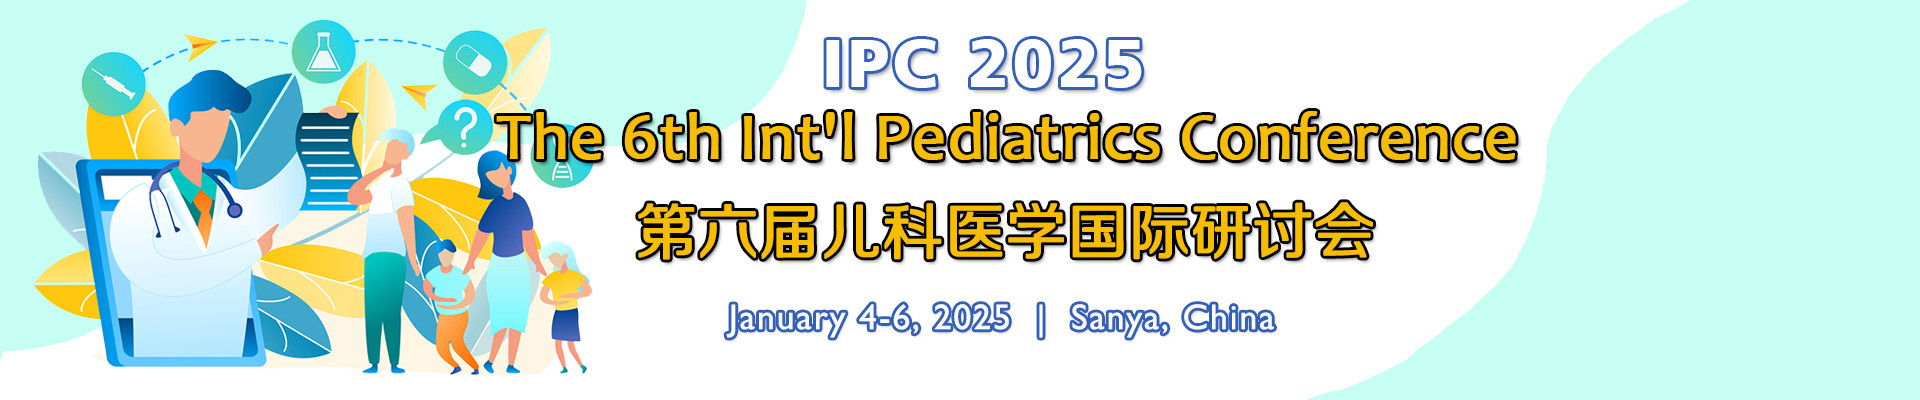 第六届儿科医学国际研讨会(IPC 2025)